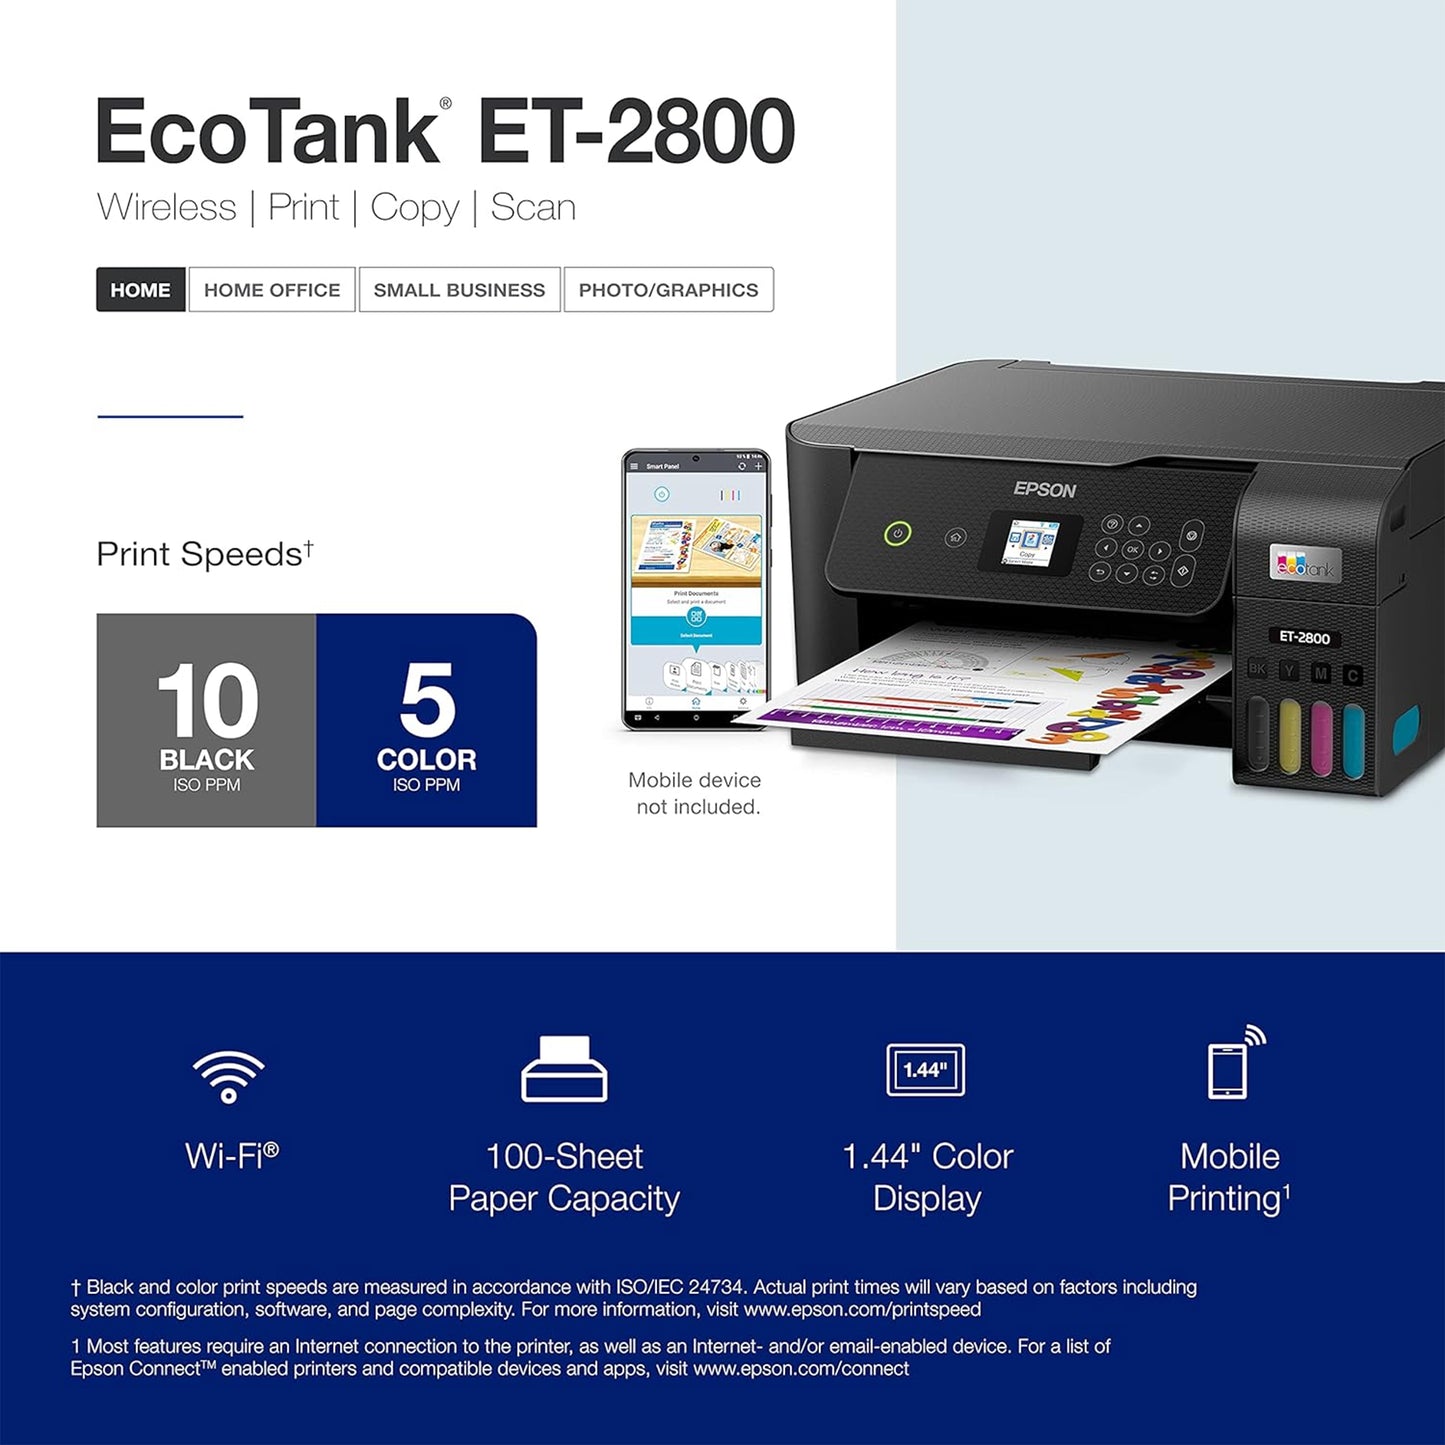 طابعة Epson EcoTank ET-2800 اللاسلكية الملونة الكل في واحد Supertank الخالية من الخرطوشة مع المسح الضوئي والنسخ. ضمان محدود كامل لمدة عام واحد - باللون الأسود (القسط المتجدد)